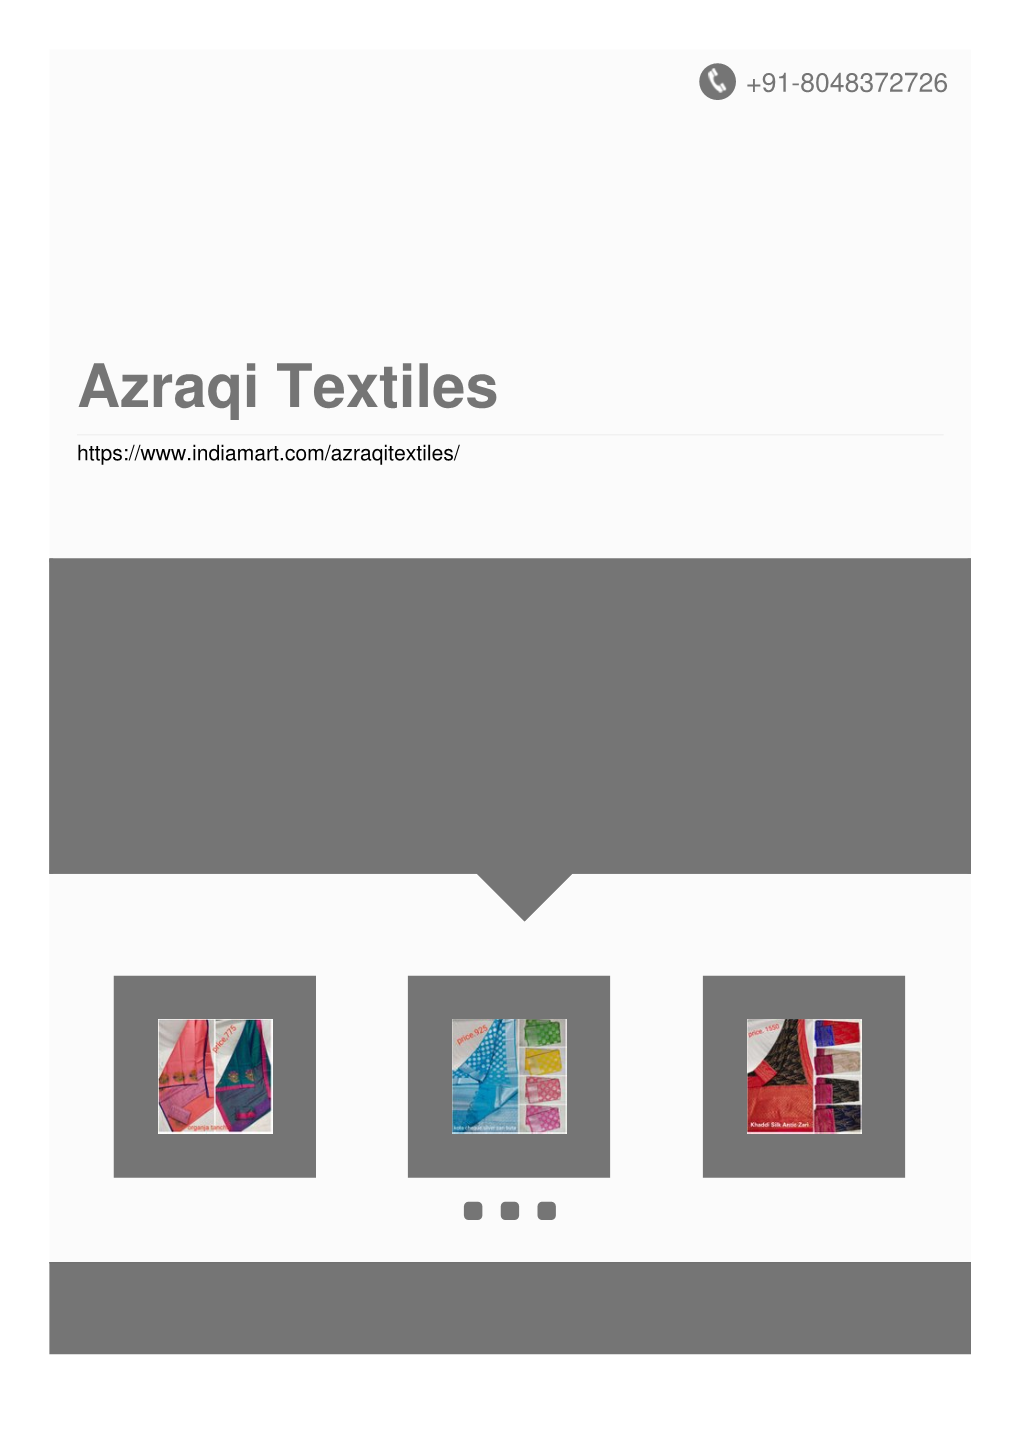 Azraqi Textiles About Us